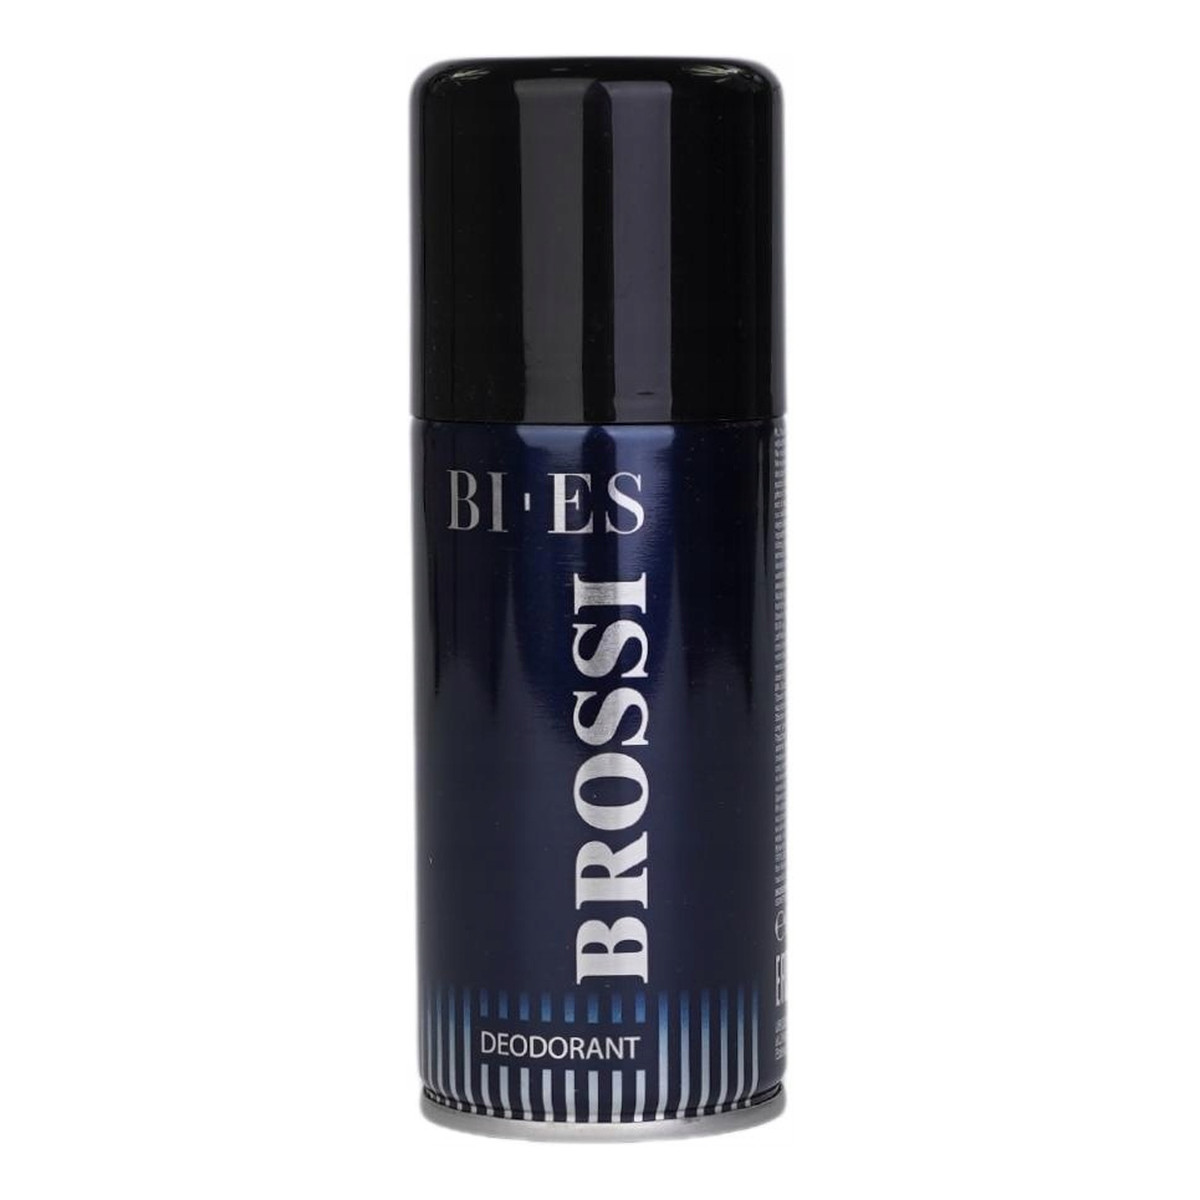 Bi-es Brossi Dezodorant 150ml